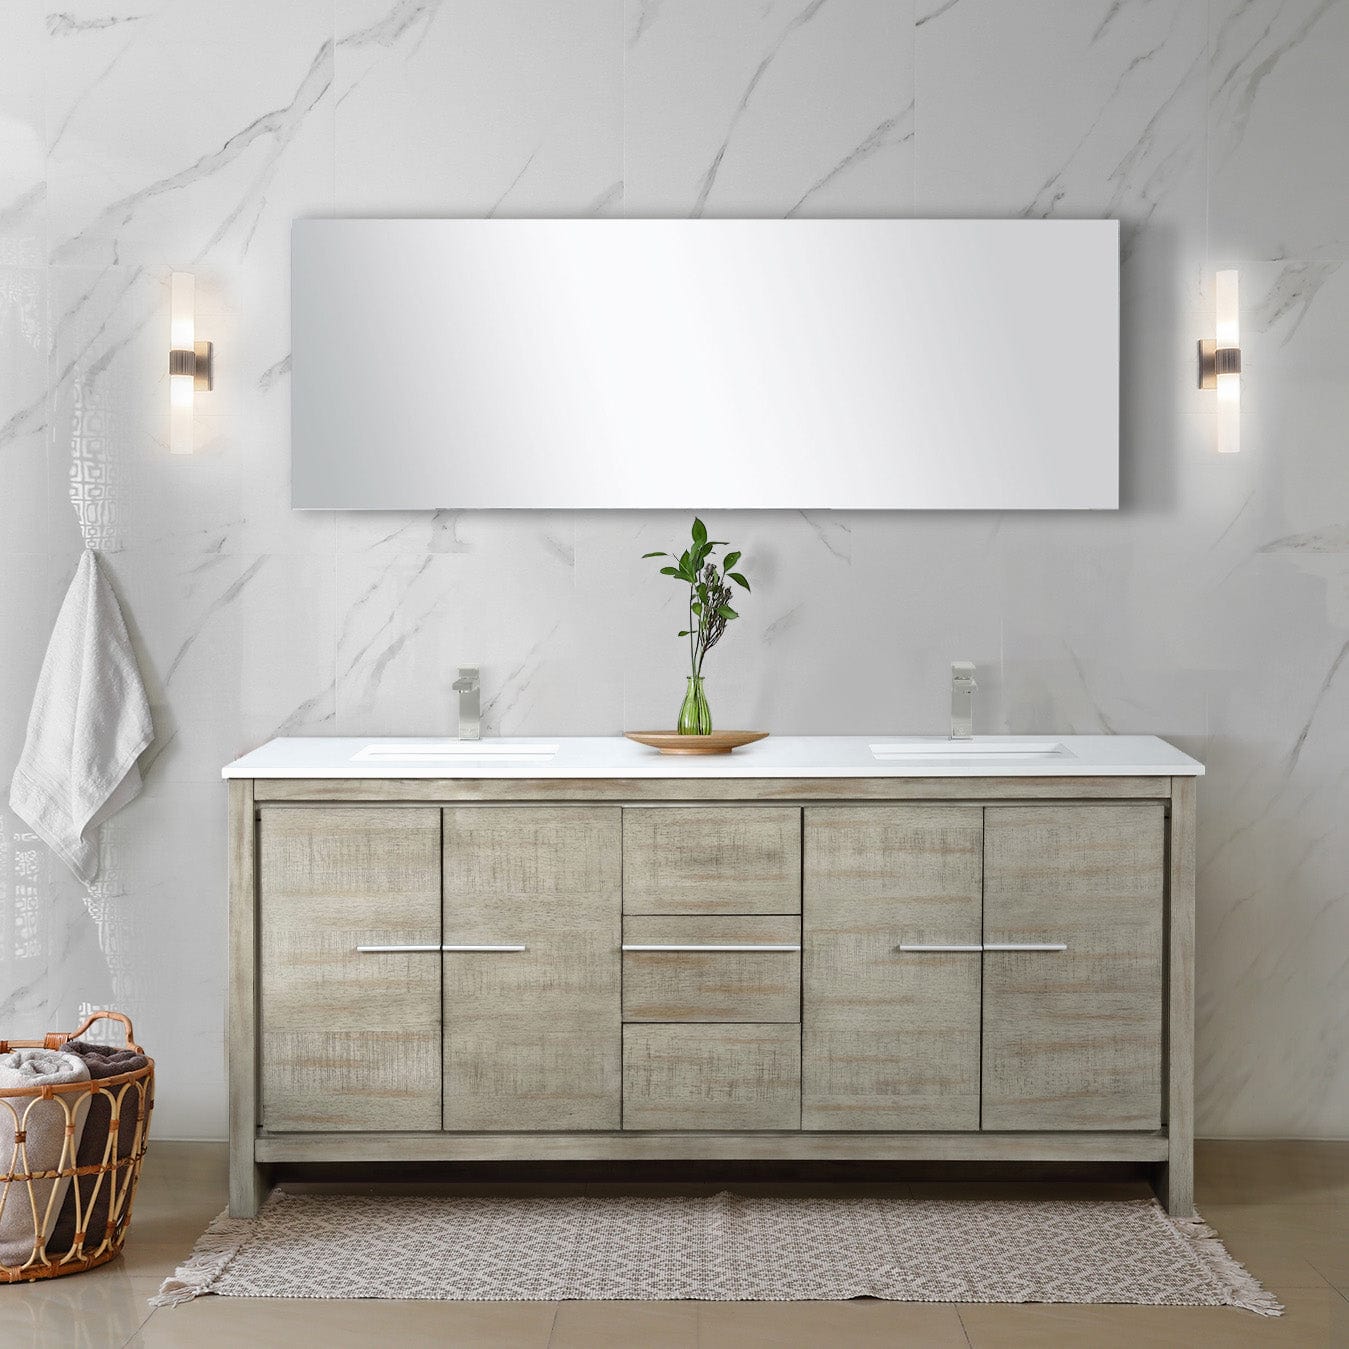 Lexora Bathroom Vanity Cultured Marble / No Faucet / No Mirror Lafarre 72" Rustic Acacia Double Bathroom Vanity